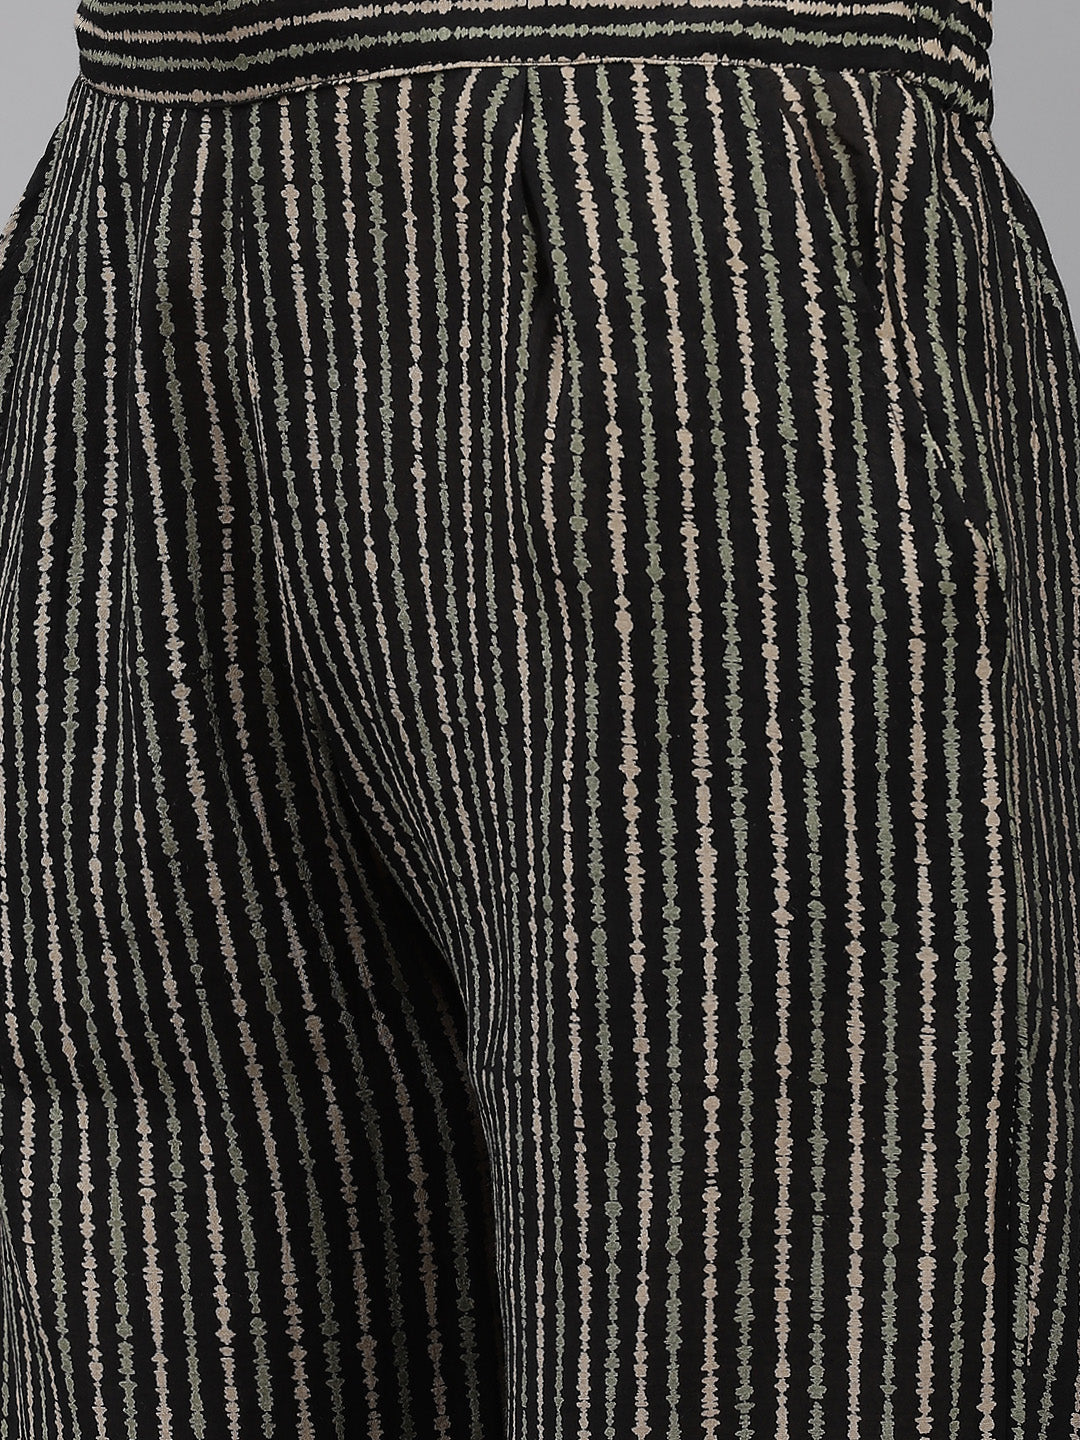 Women's Silk Blend Black Yoke Embroidered A-Line Kurta Trouser Dupatta Set - Navyaa